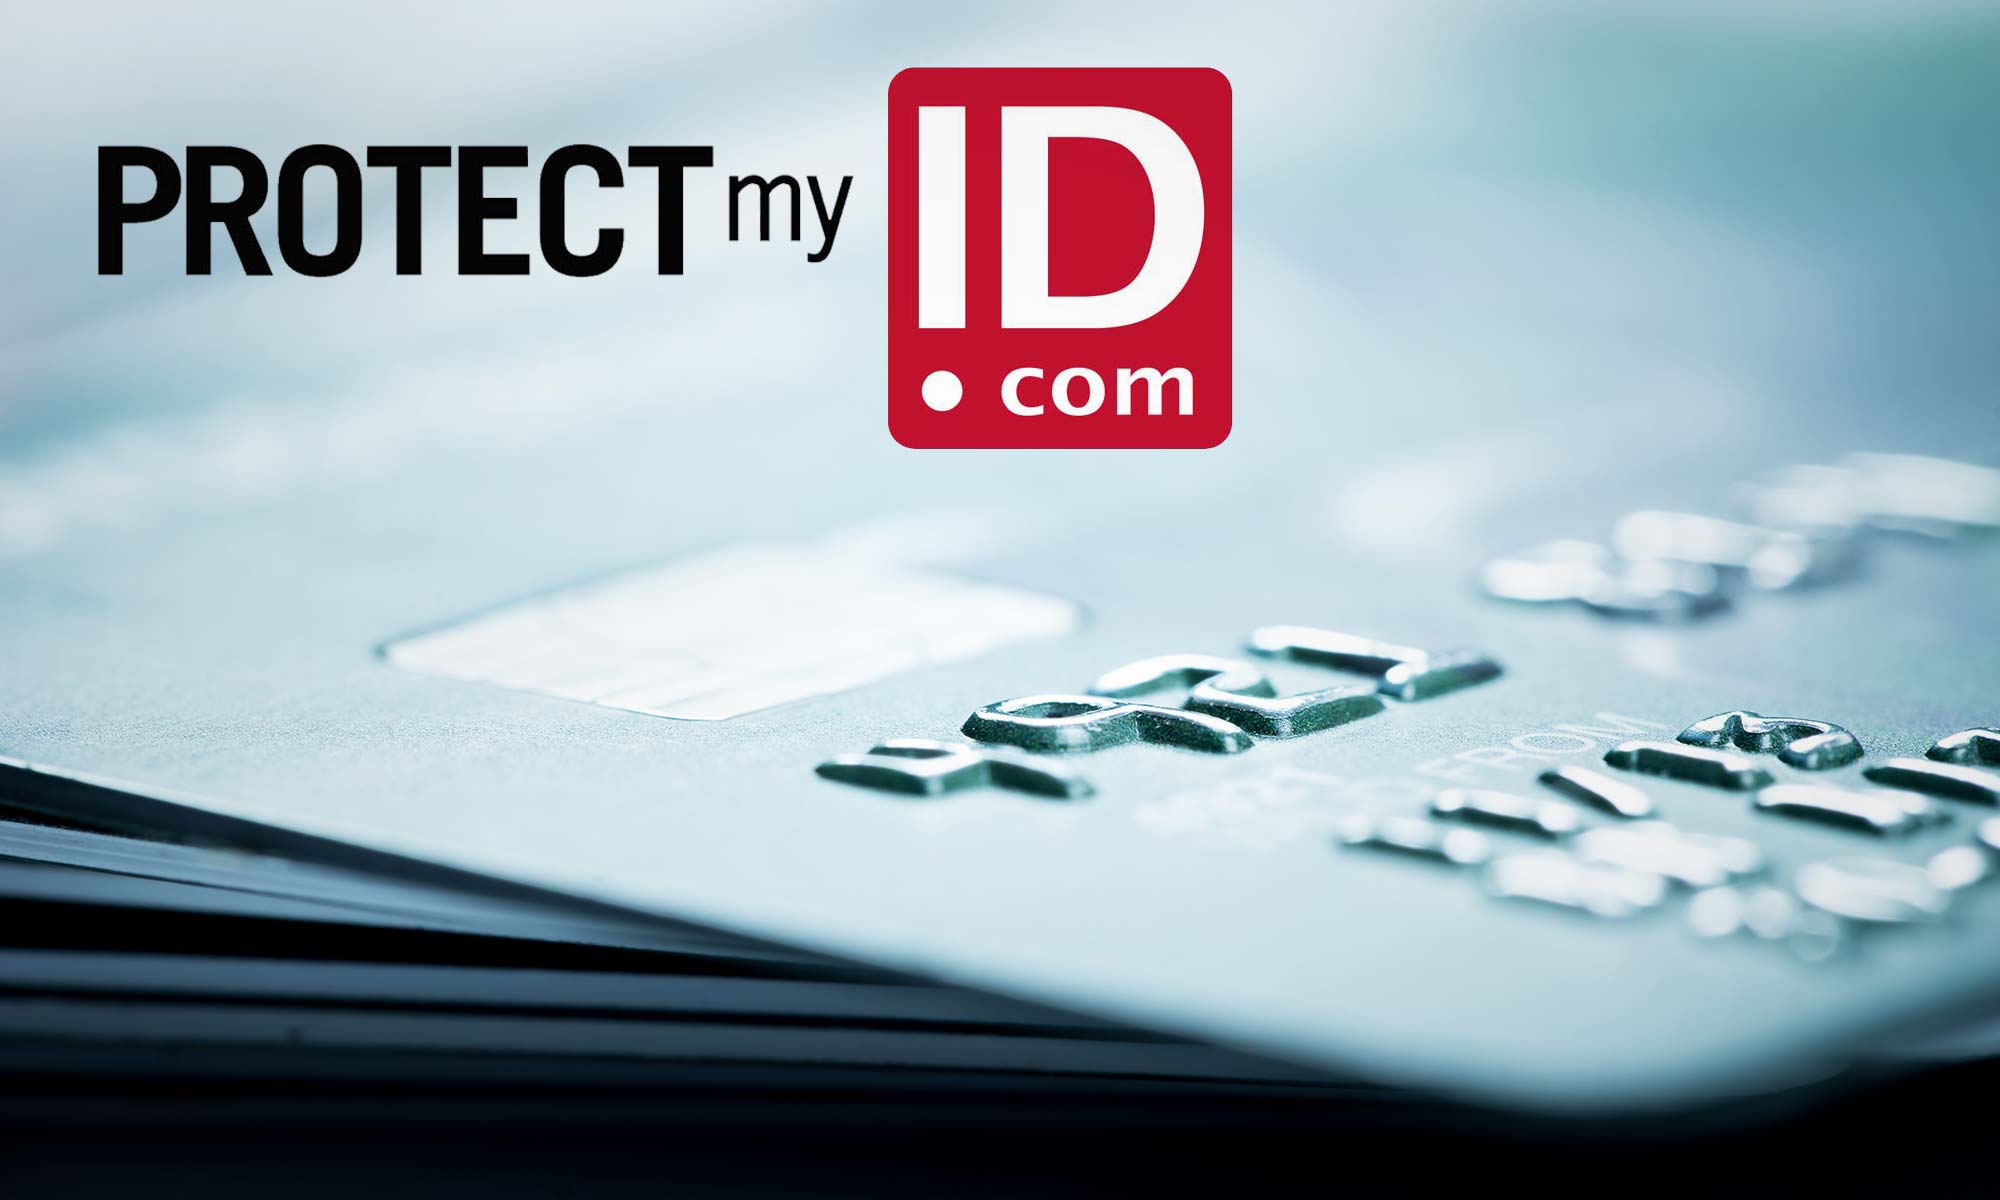 Er beskyttelse min ID verdt det?